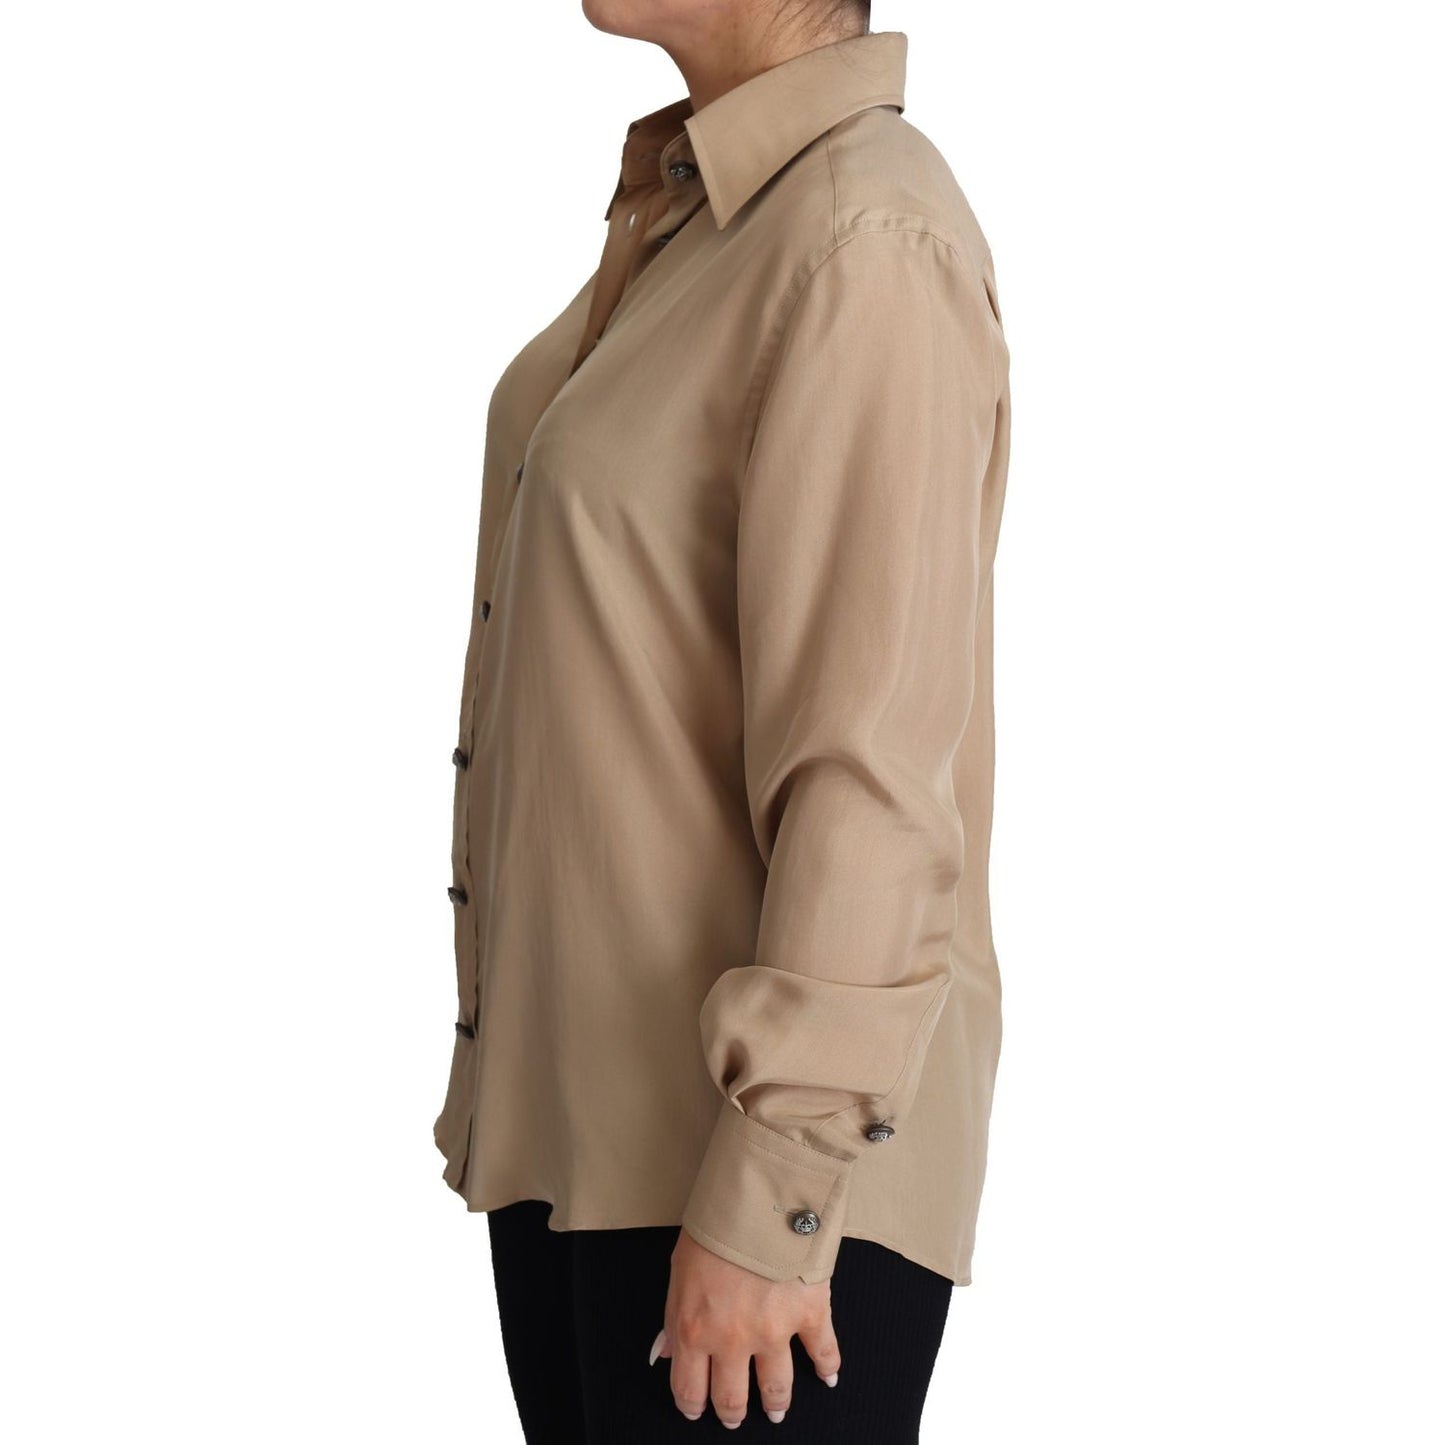 Dolce & Gabbana Elegant Beige Silk Shirt beige-silk-shirt-decorative-buttons-top